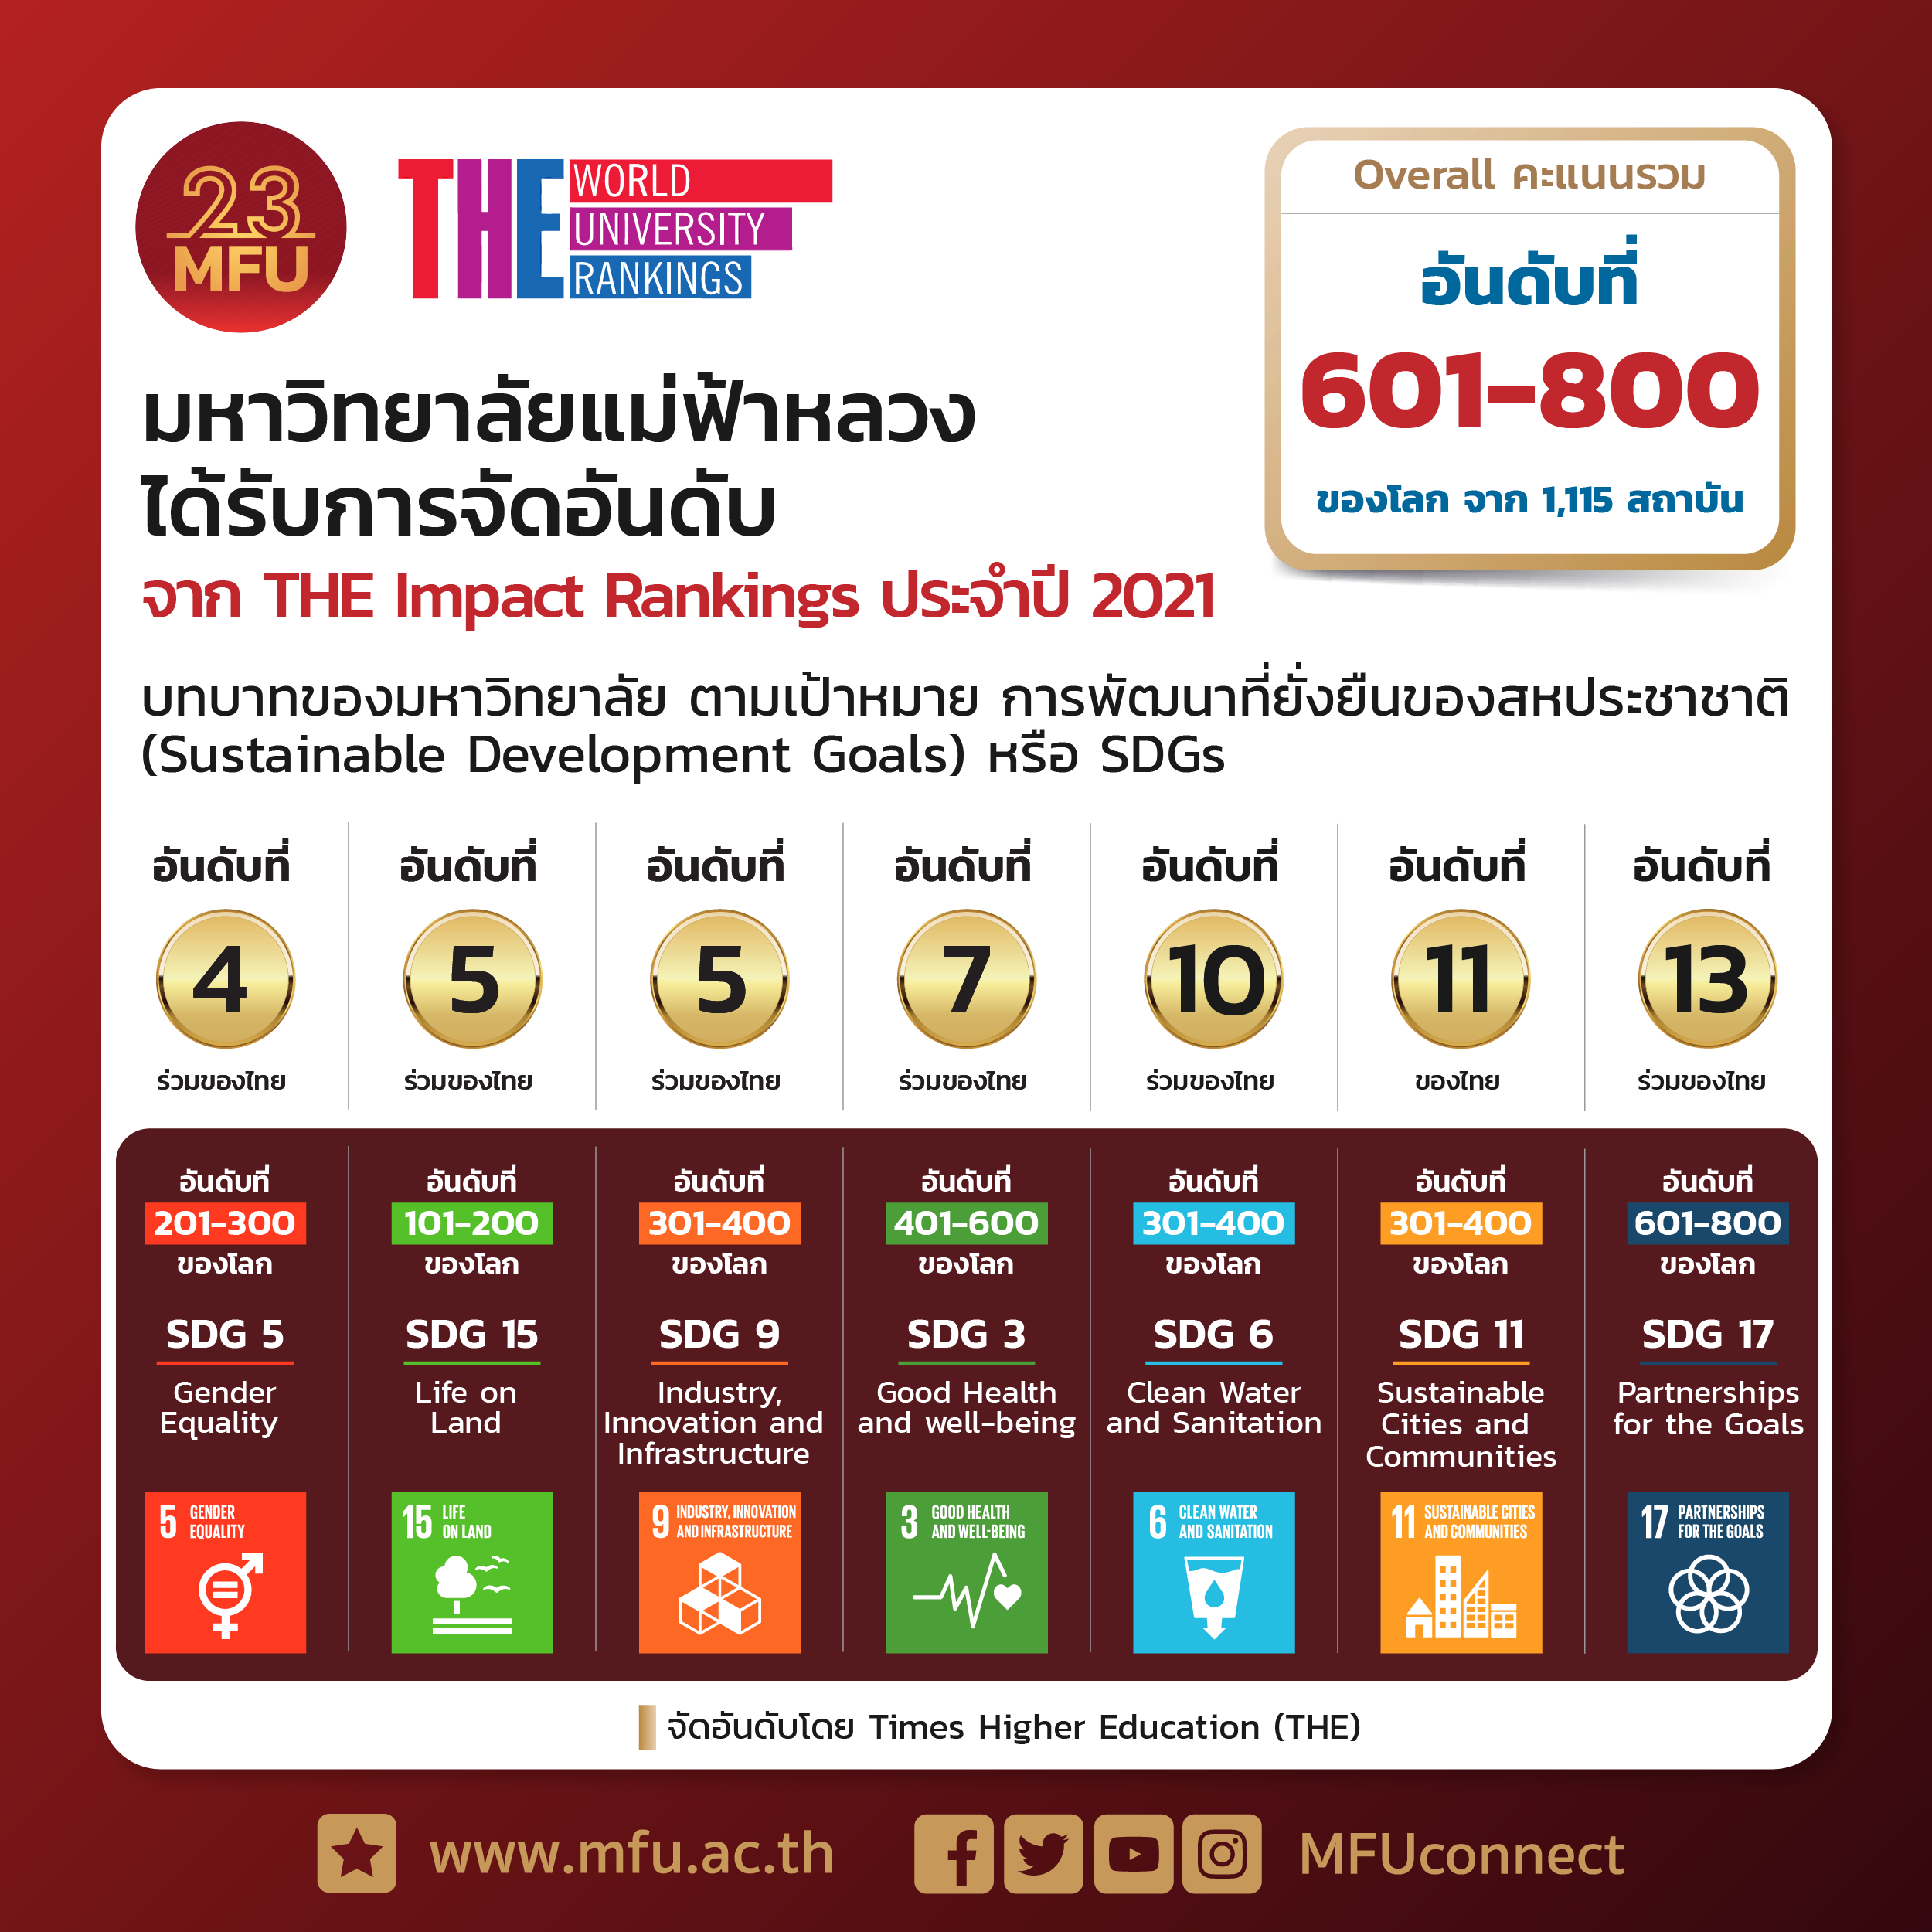 มฟล. 1 ใน 25 มหาวิทยาลัยตัวแทนประเทศไทยบนเวทีโลกของการจัดอันดับ THE Impact Rankings 2021